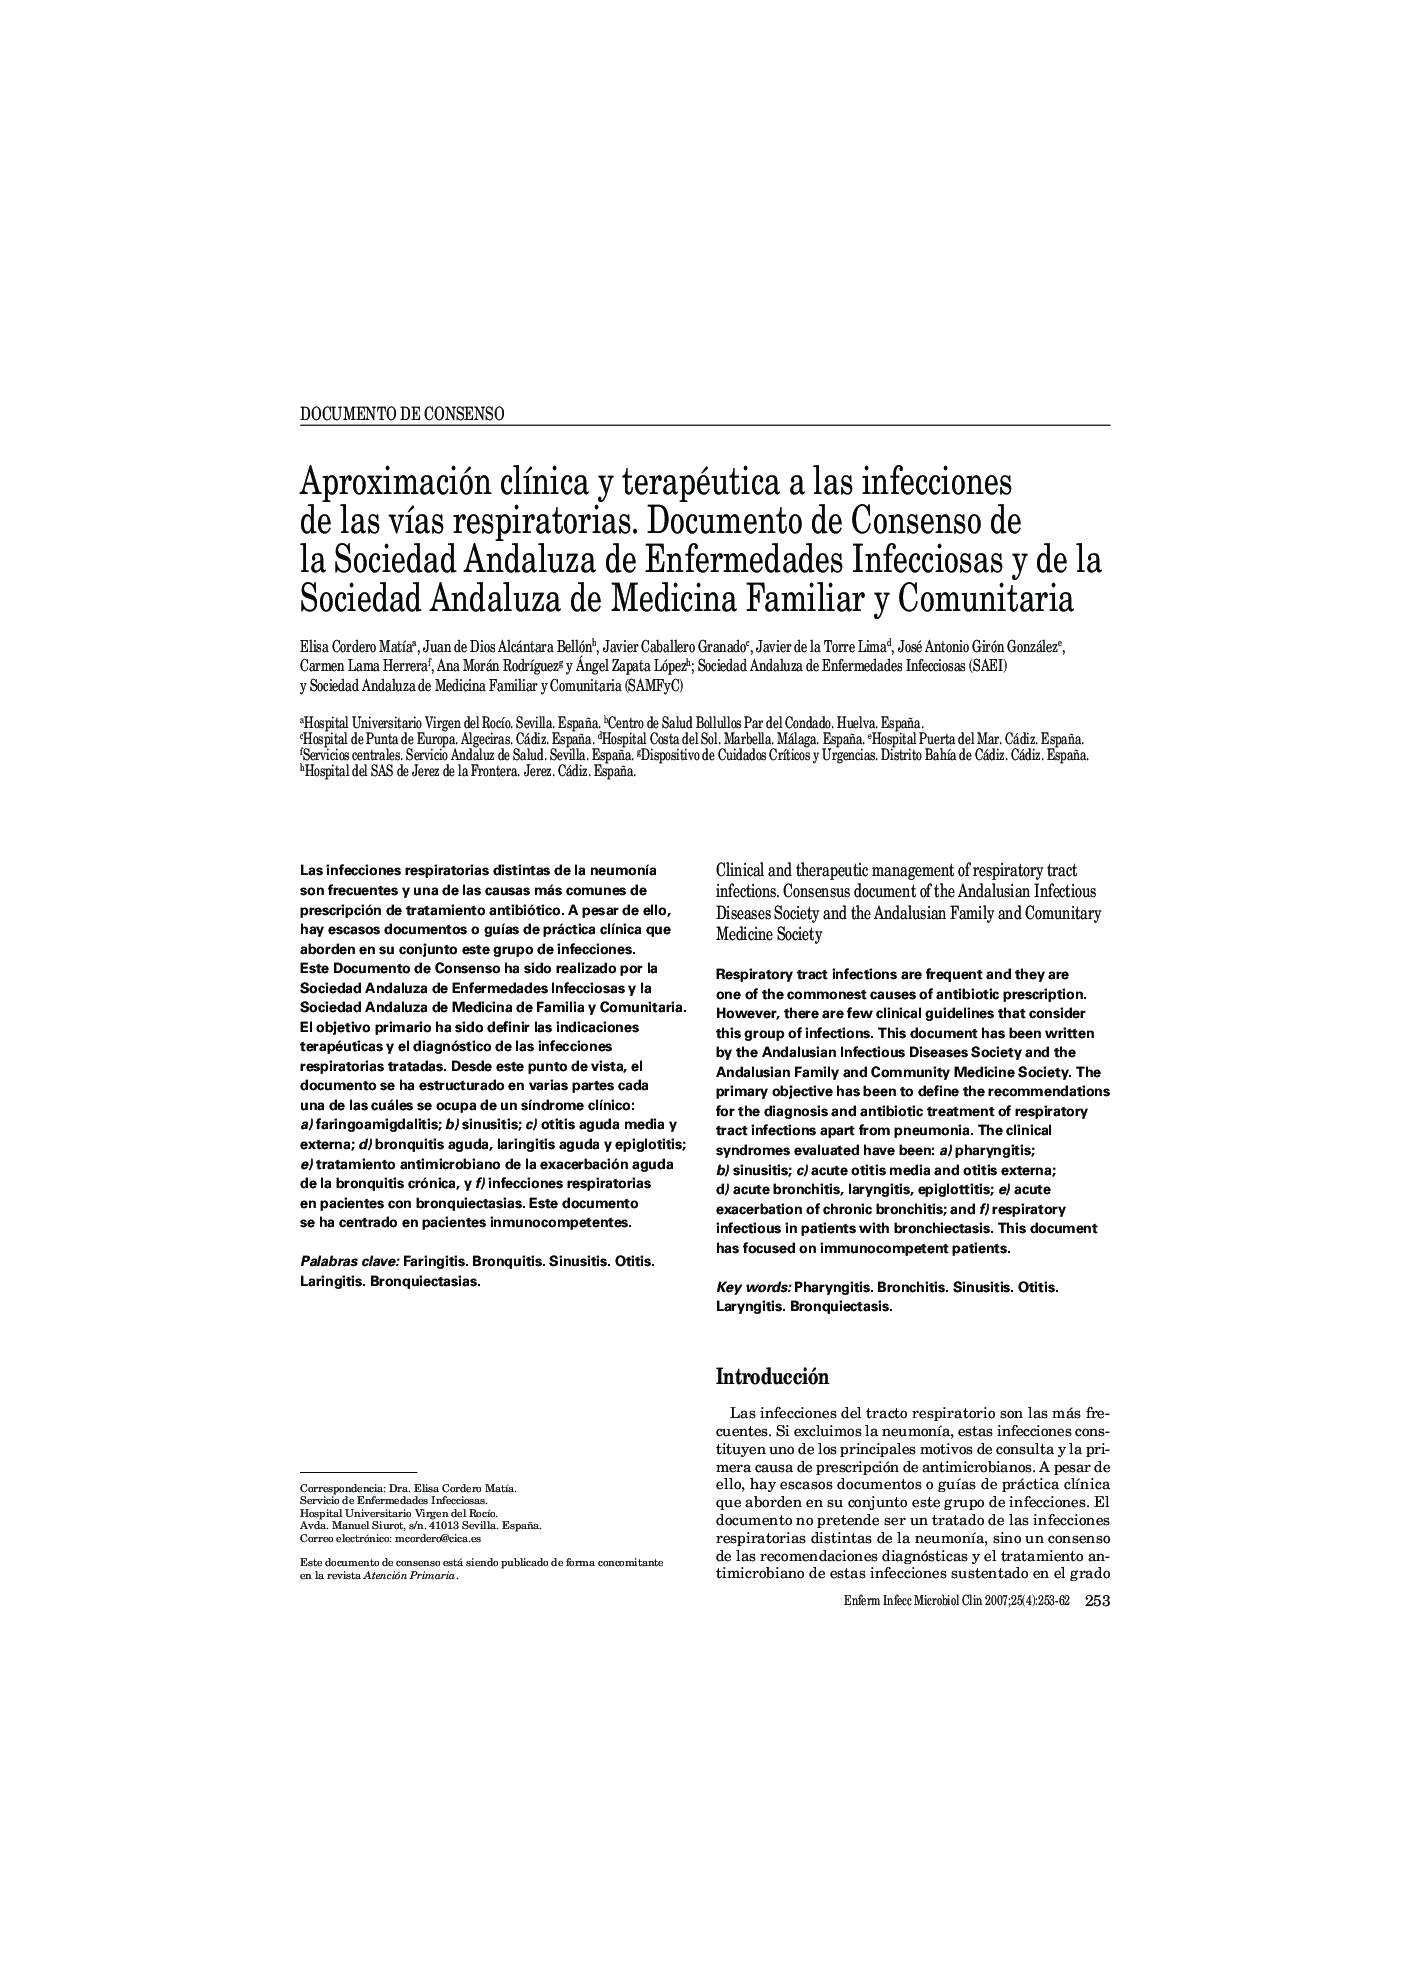 Aproximación clÃ­nica y terapéutica a las infecciones de las vÃ­as respiratorias. Documento de Consenso de la Sociedad Andaluza de Enfermedades Infecciosas y de la Sociedad Andaluza de Medicina Familiar y Comunitaria